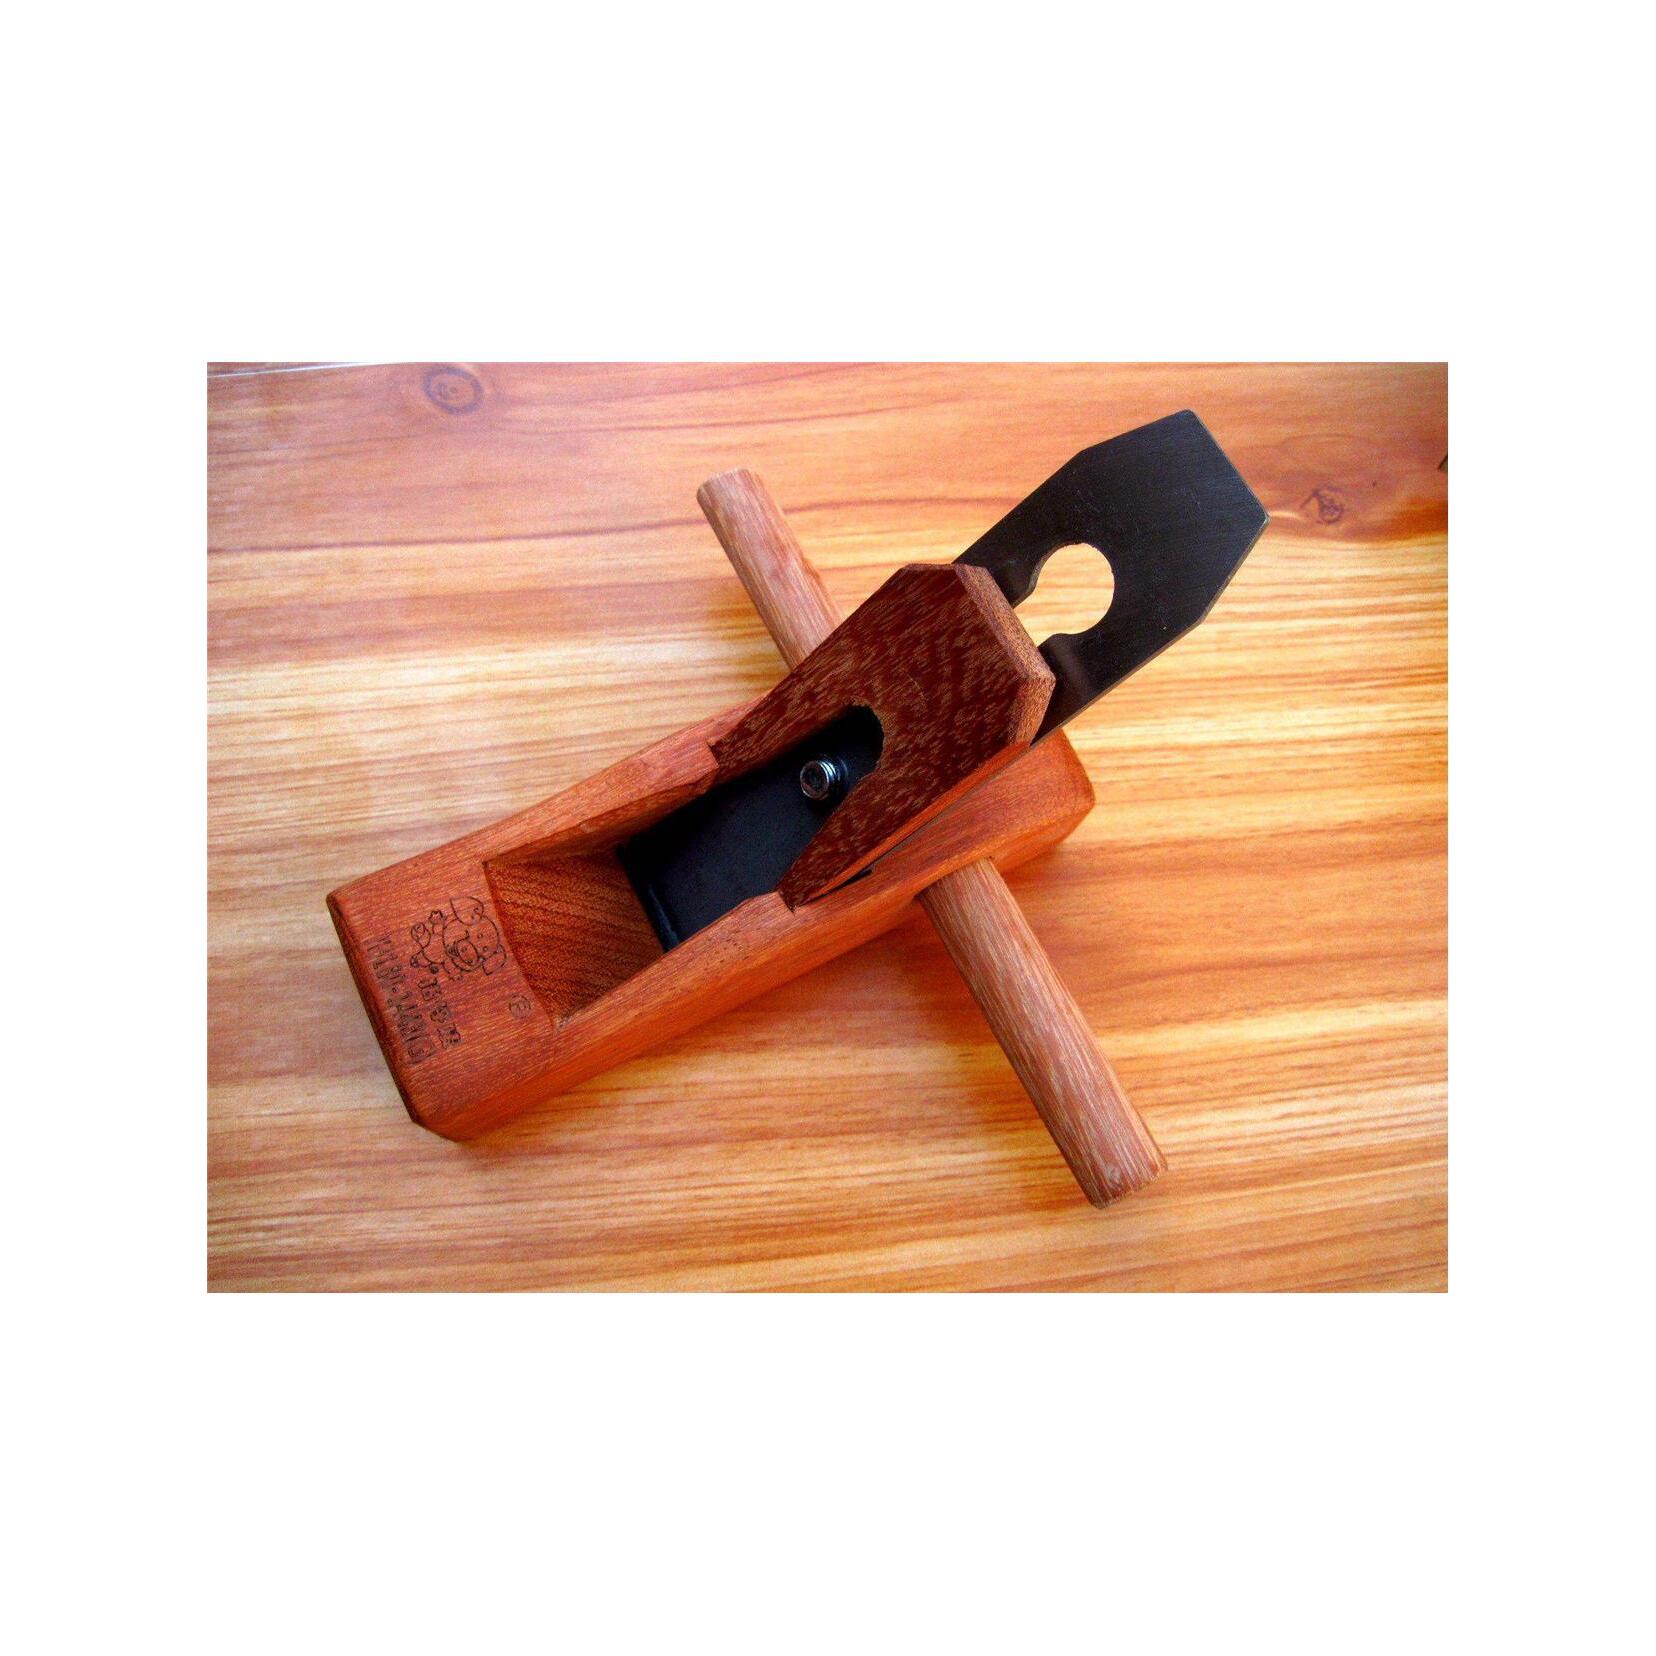 。木刨印尼红木木刨刀手刨子迷你手工刨木匠木工工具锤锯